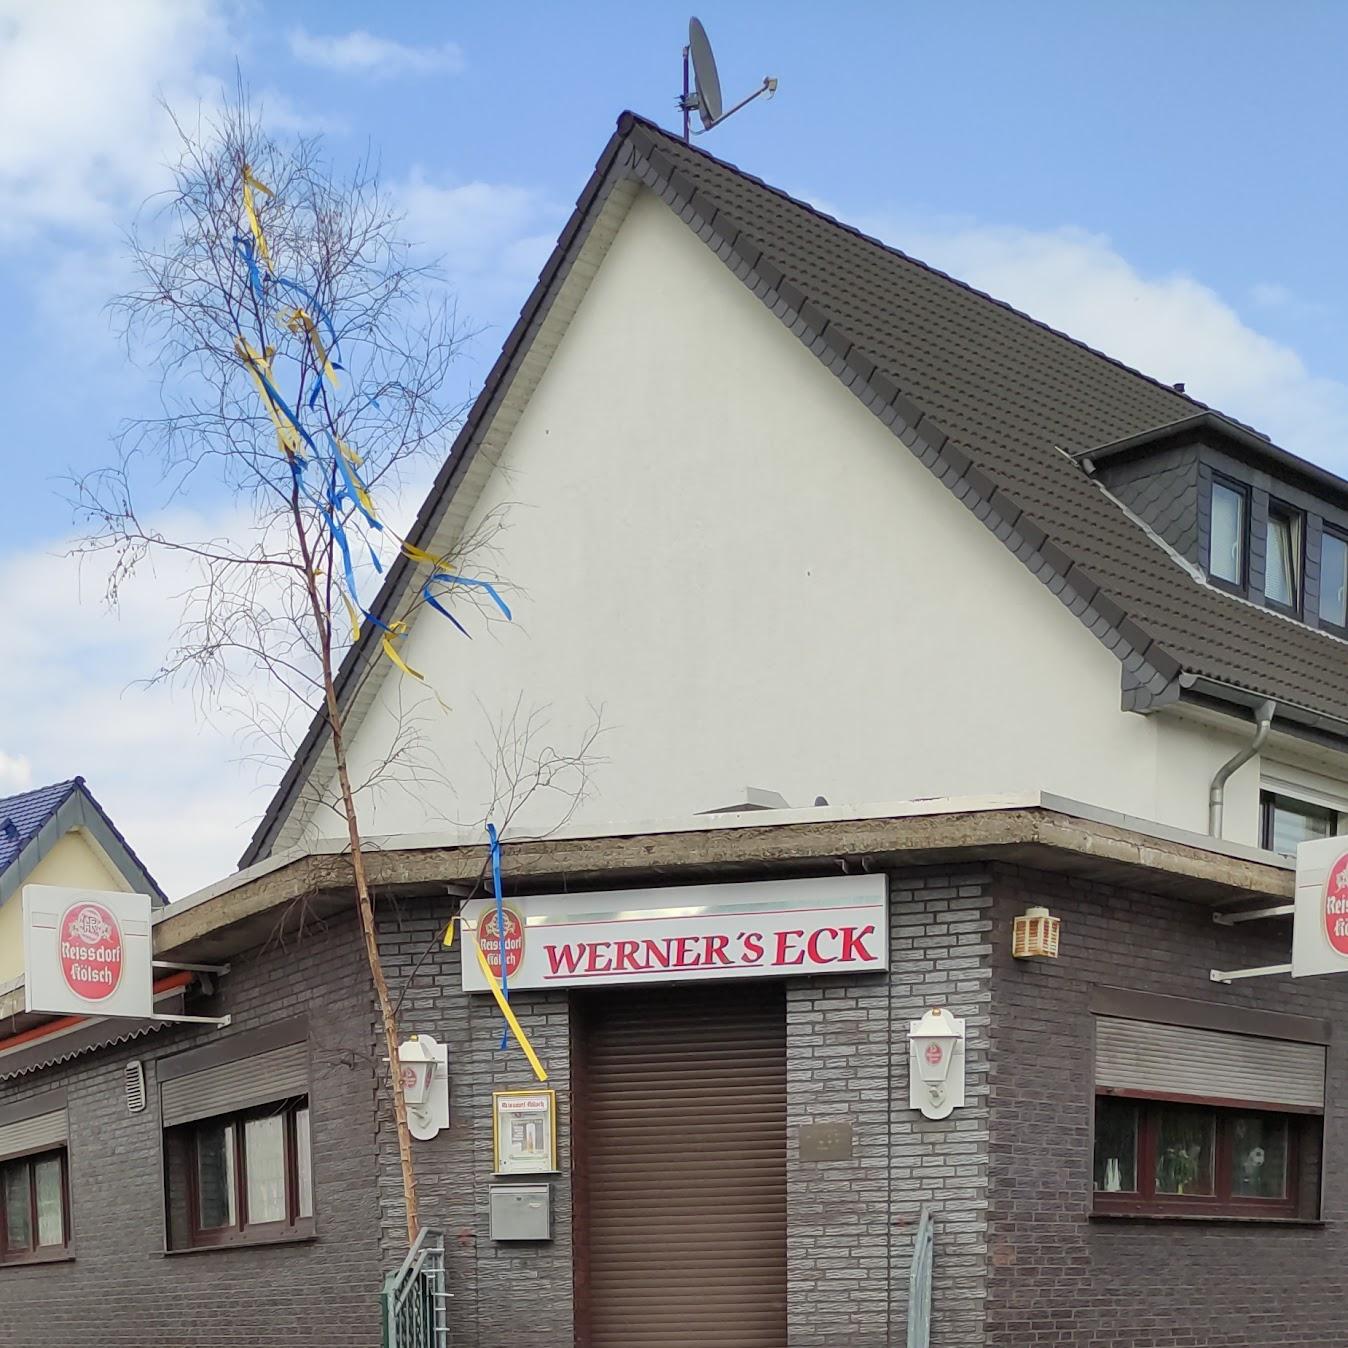 Restaurant "Werners Eck" in Niederkassel